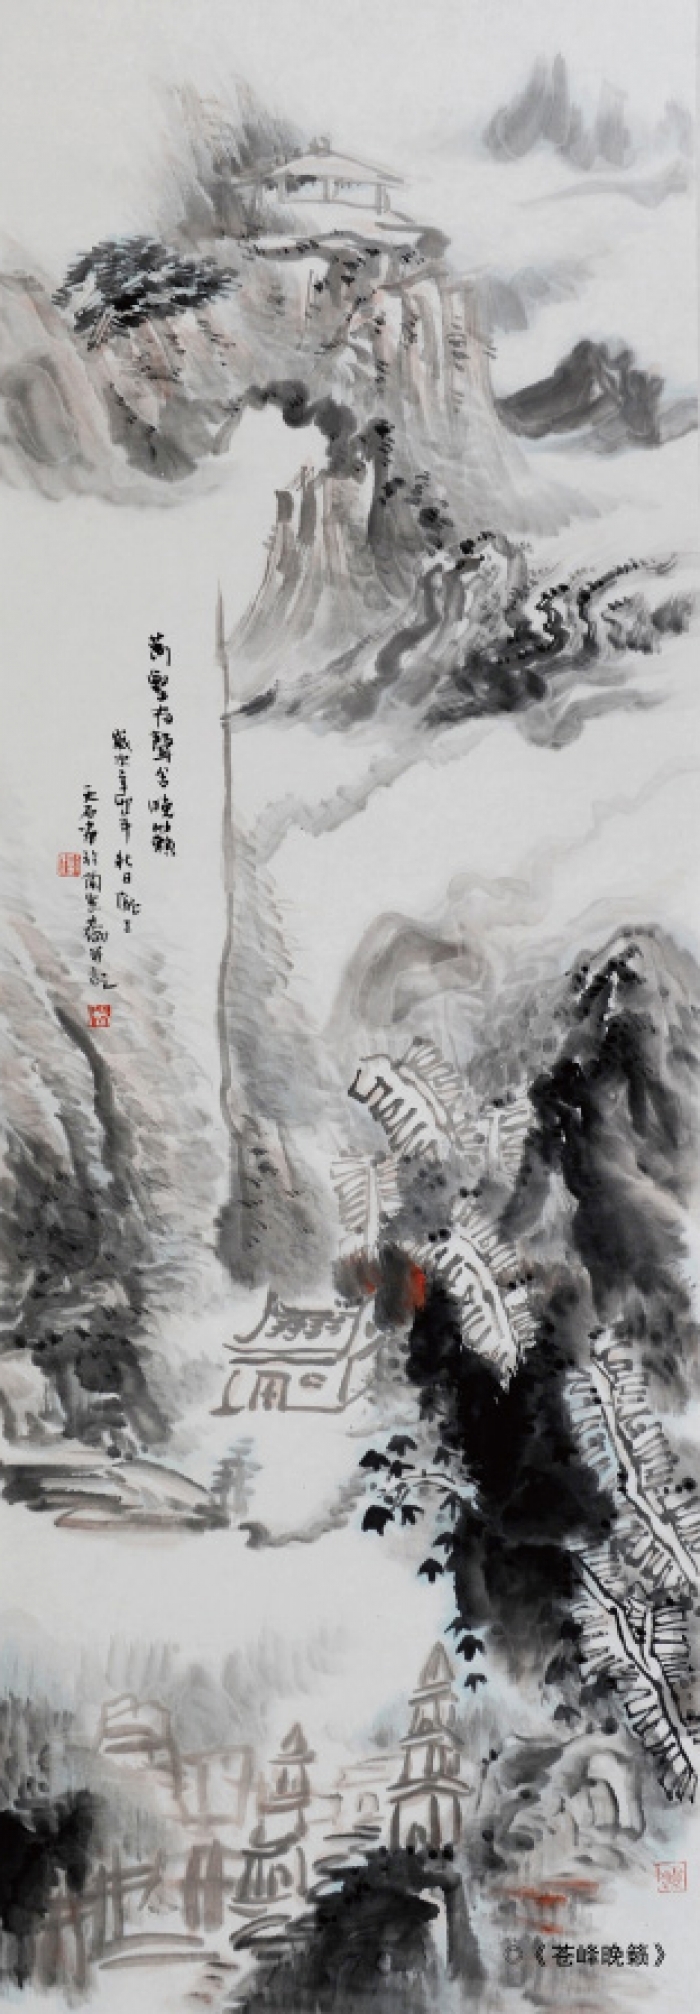 Liu Yuzhu Chinesische Kunst - Die sich überwältigenden Berge